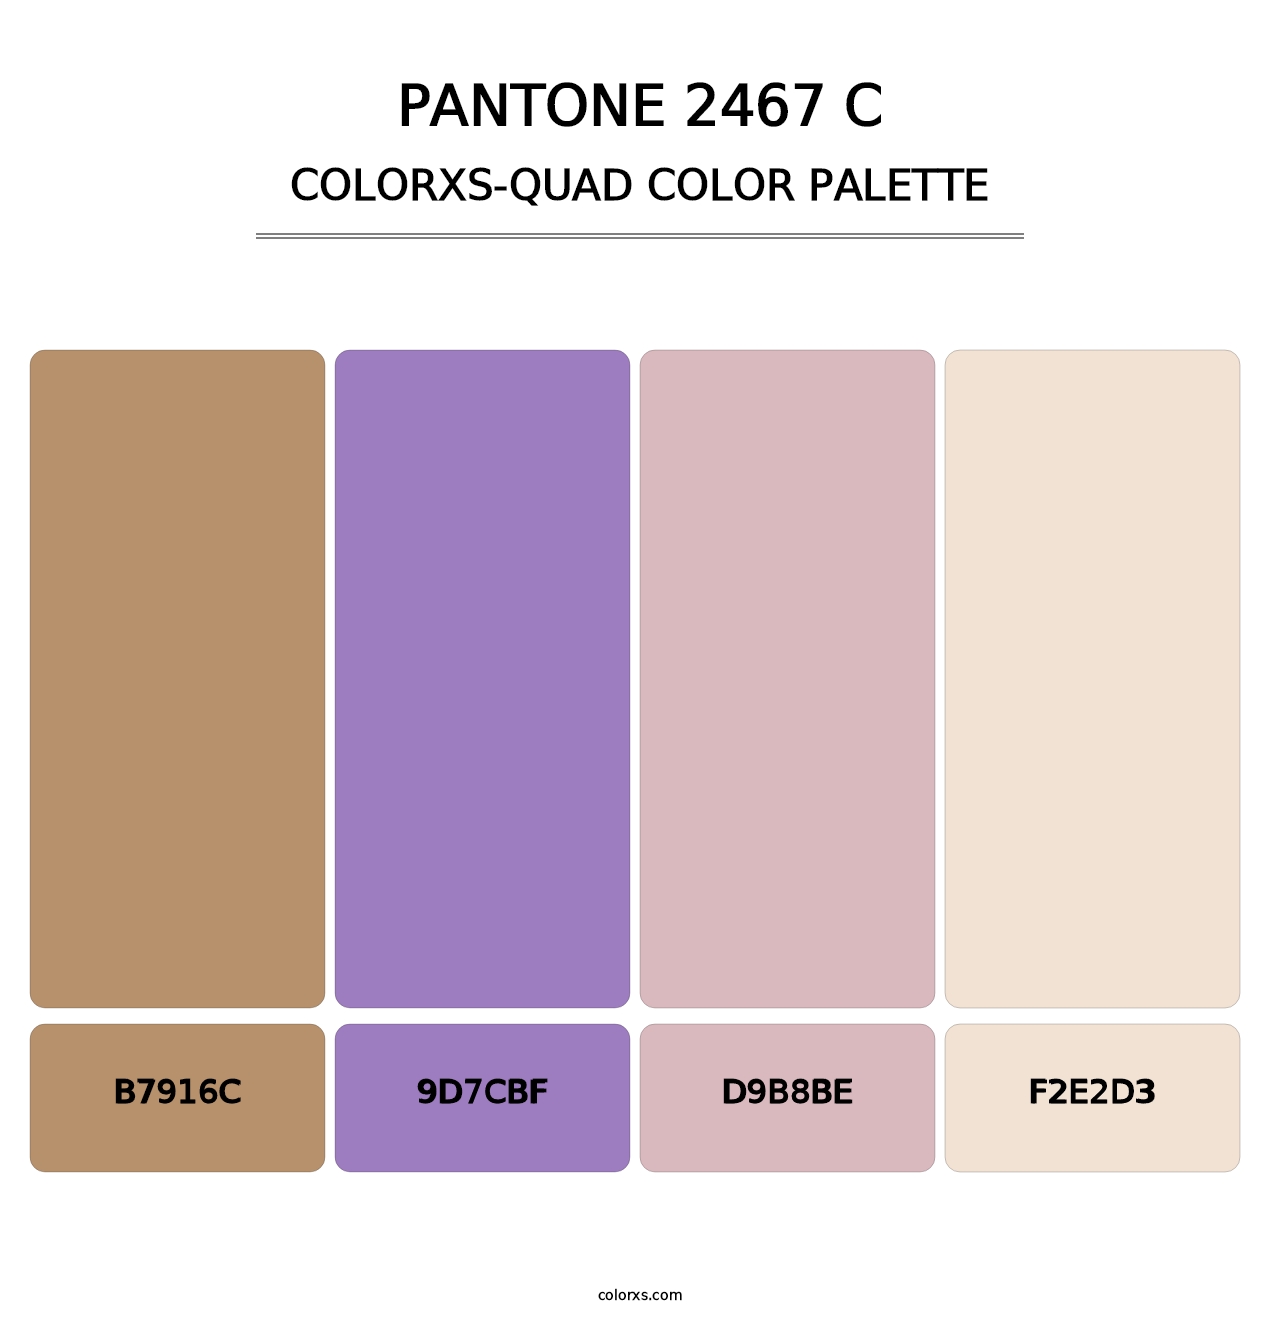 PANTONE 2467 C - Colorxs Quad Palette